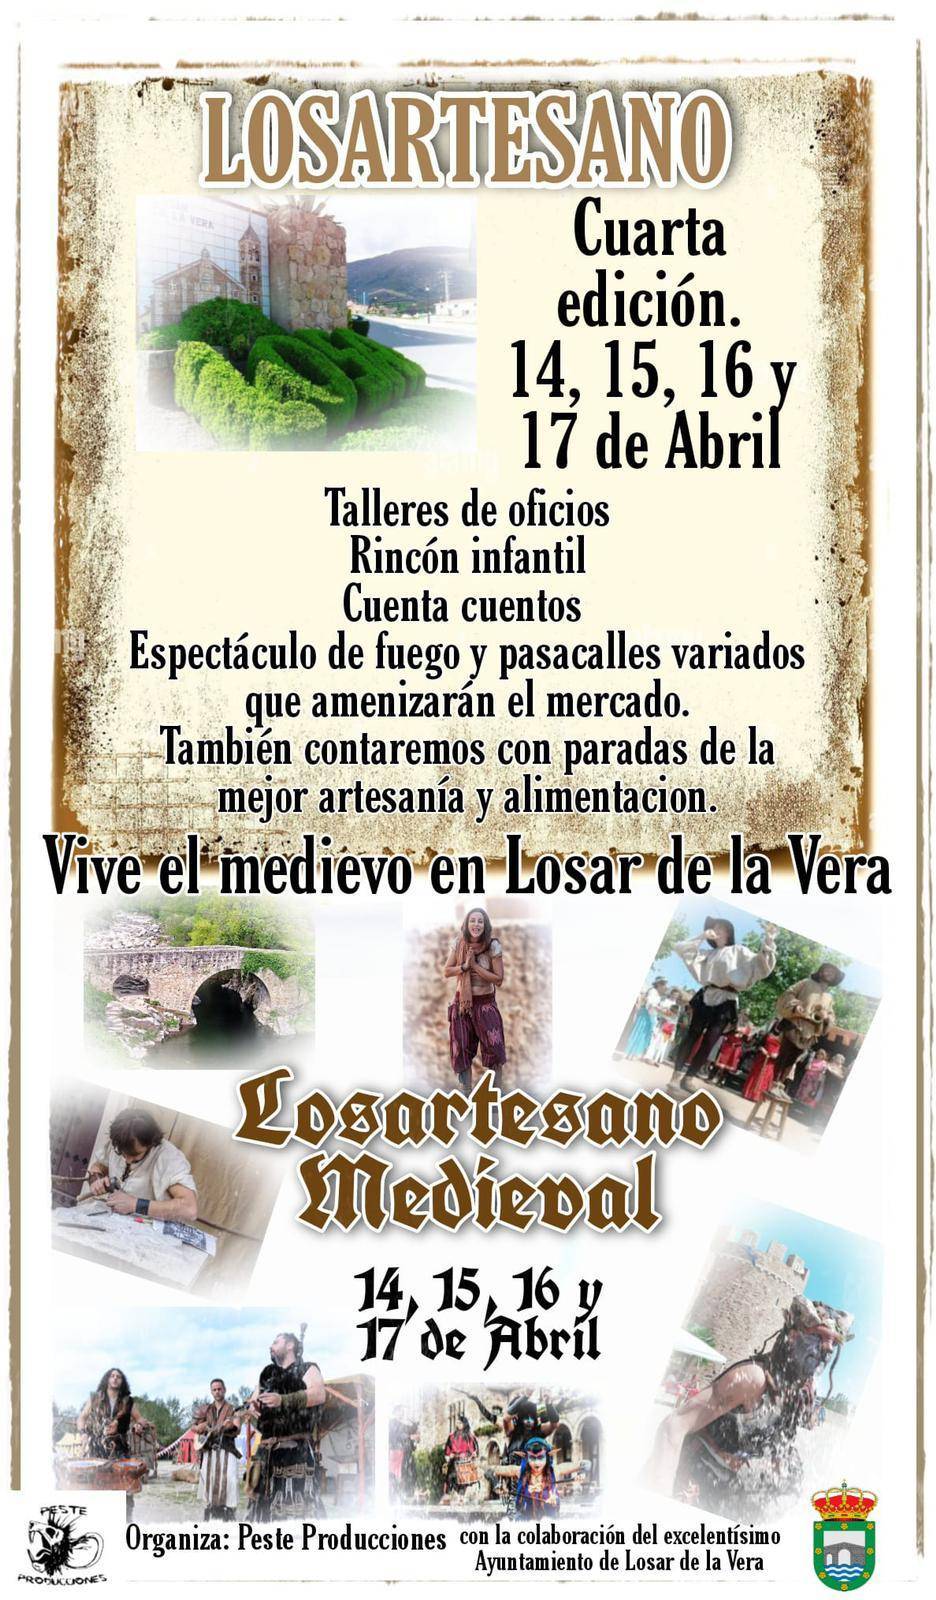 Losartesano Medieval (2022) - Losar de la Vera (Cáceres)